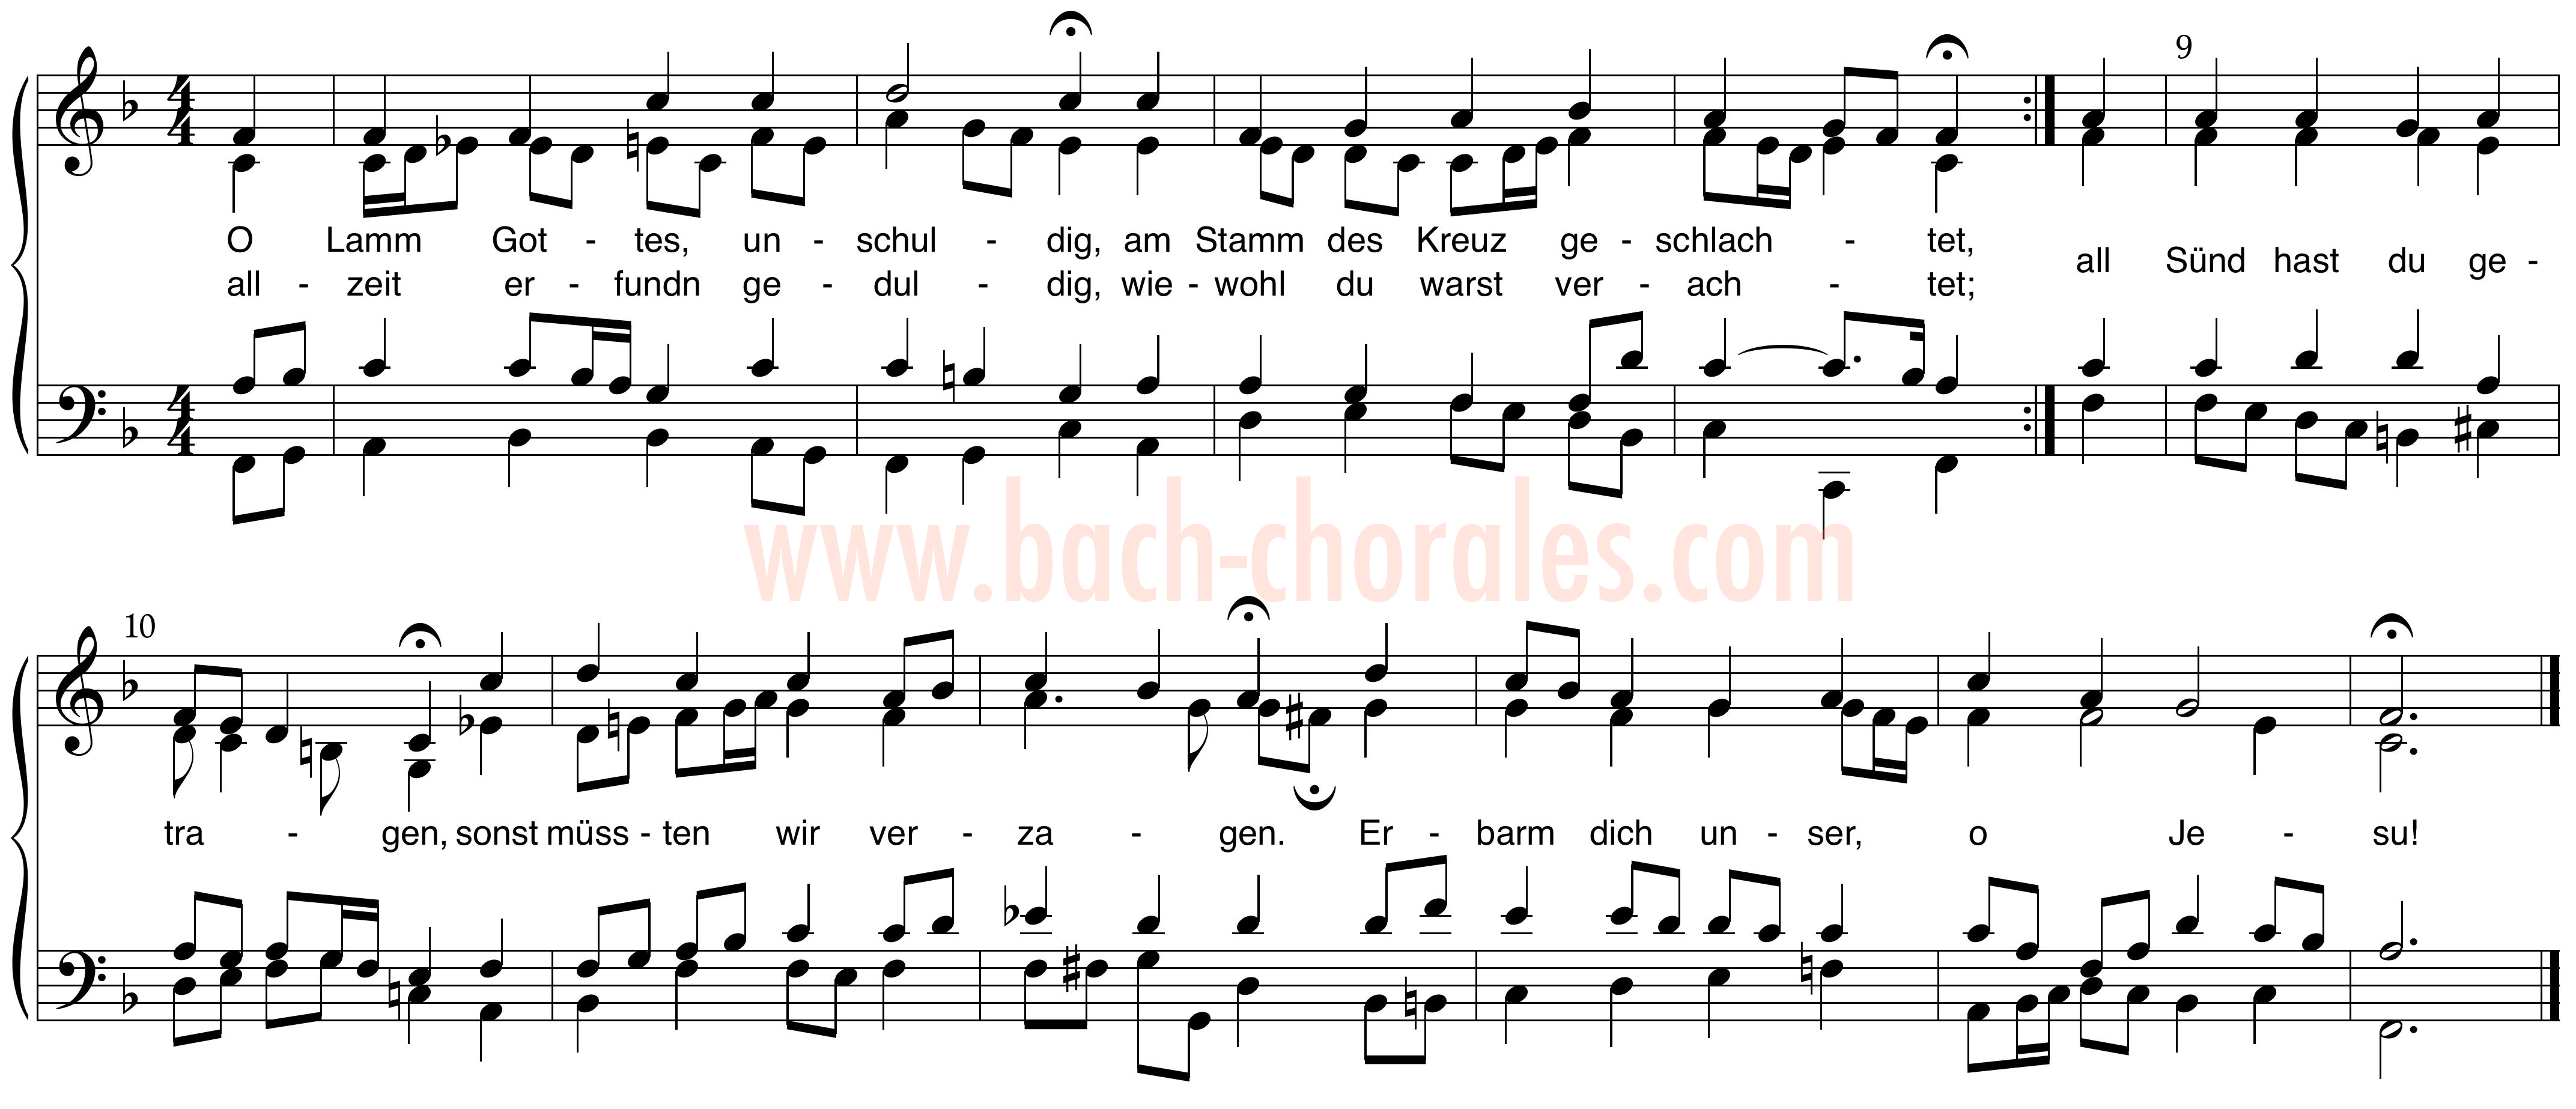 notenbeeld BWV 401 op https://www.bach-chorales.com/